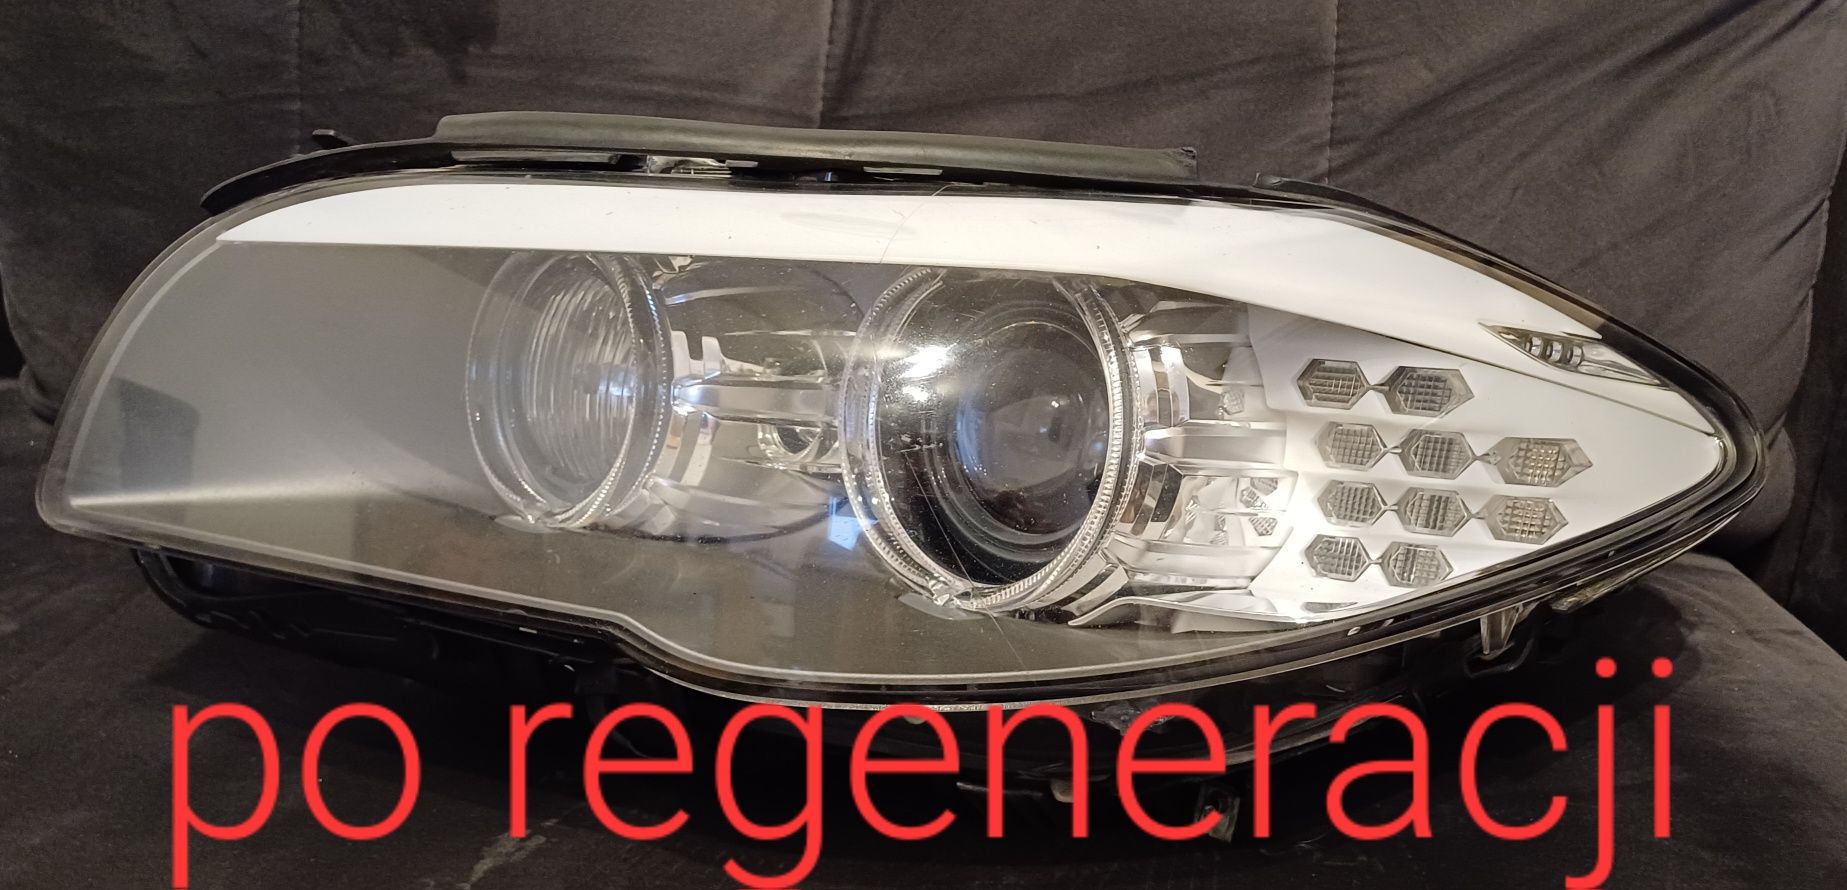 Naprawa lamp regeneracja uszczelnianie lamp insignia f10 audi bmw ford